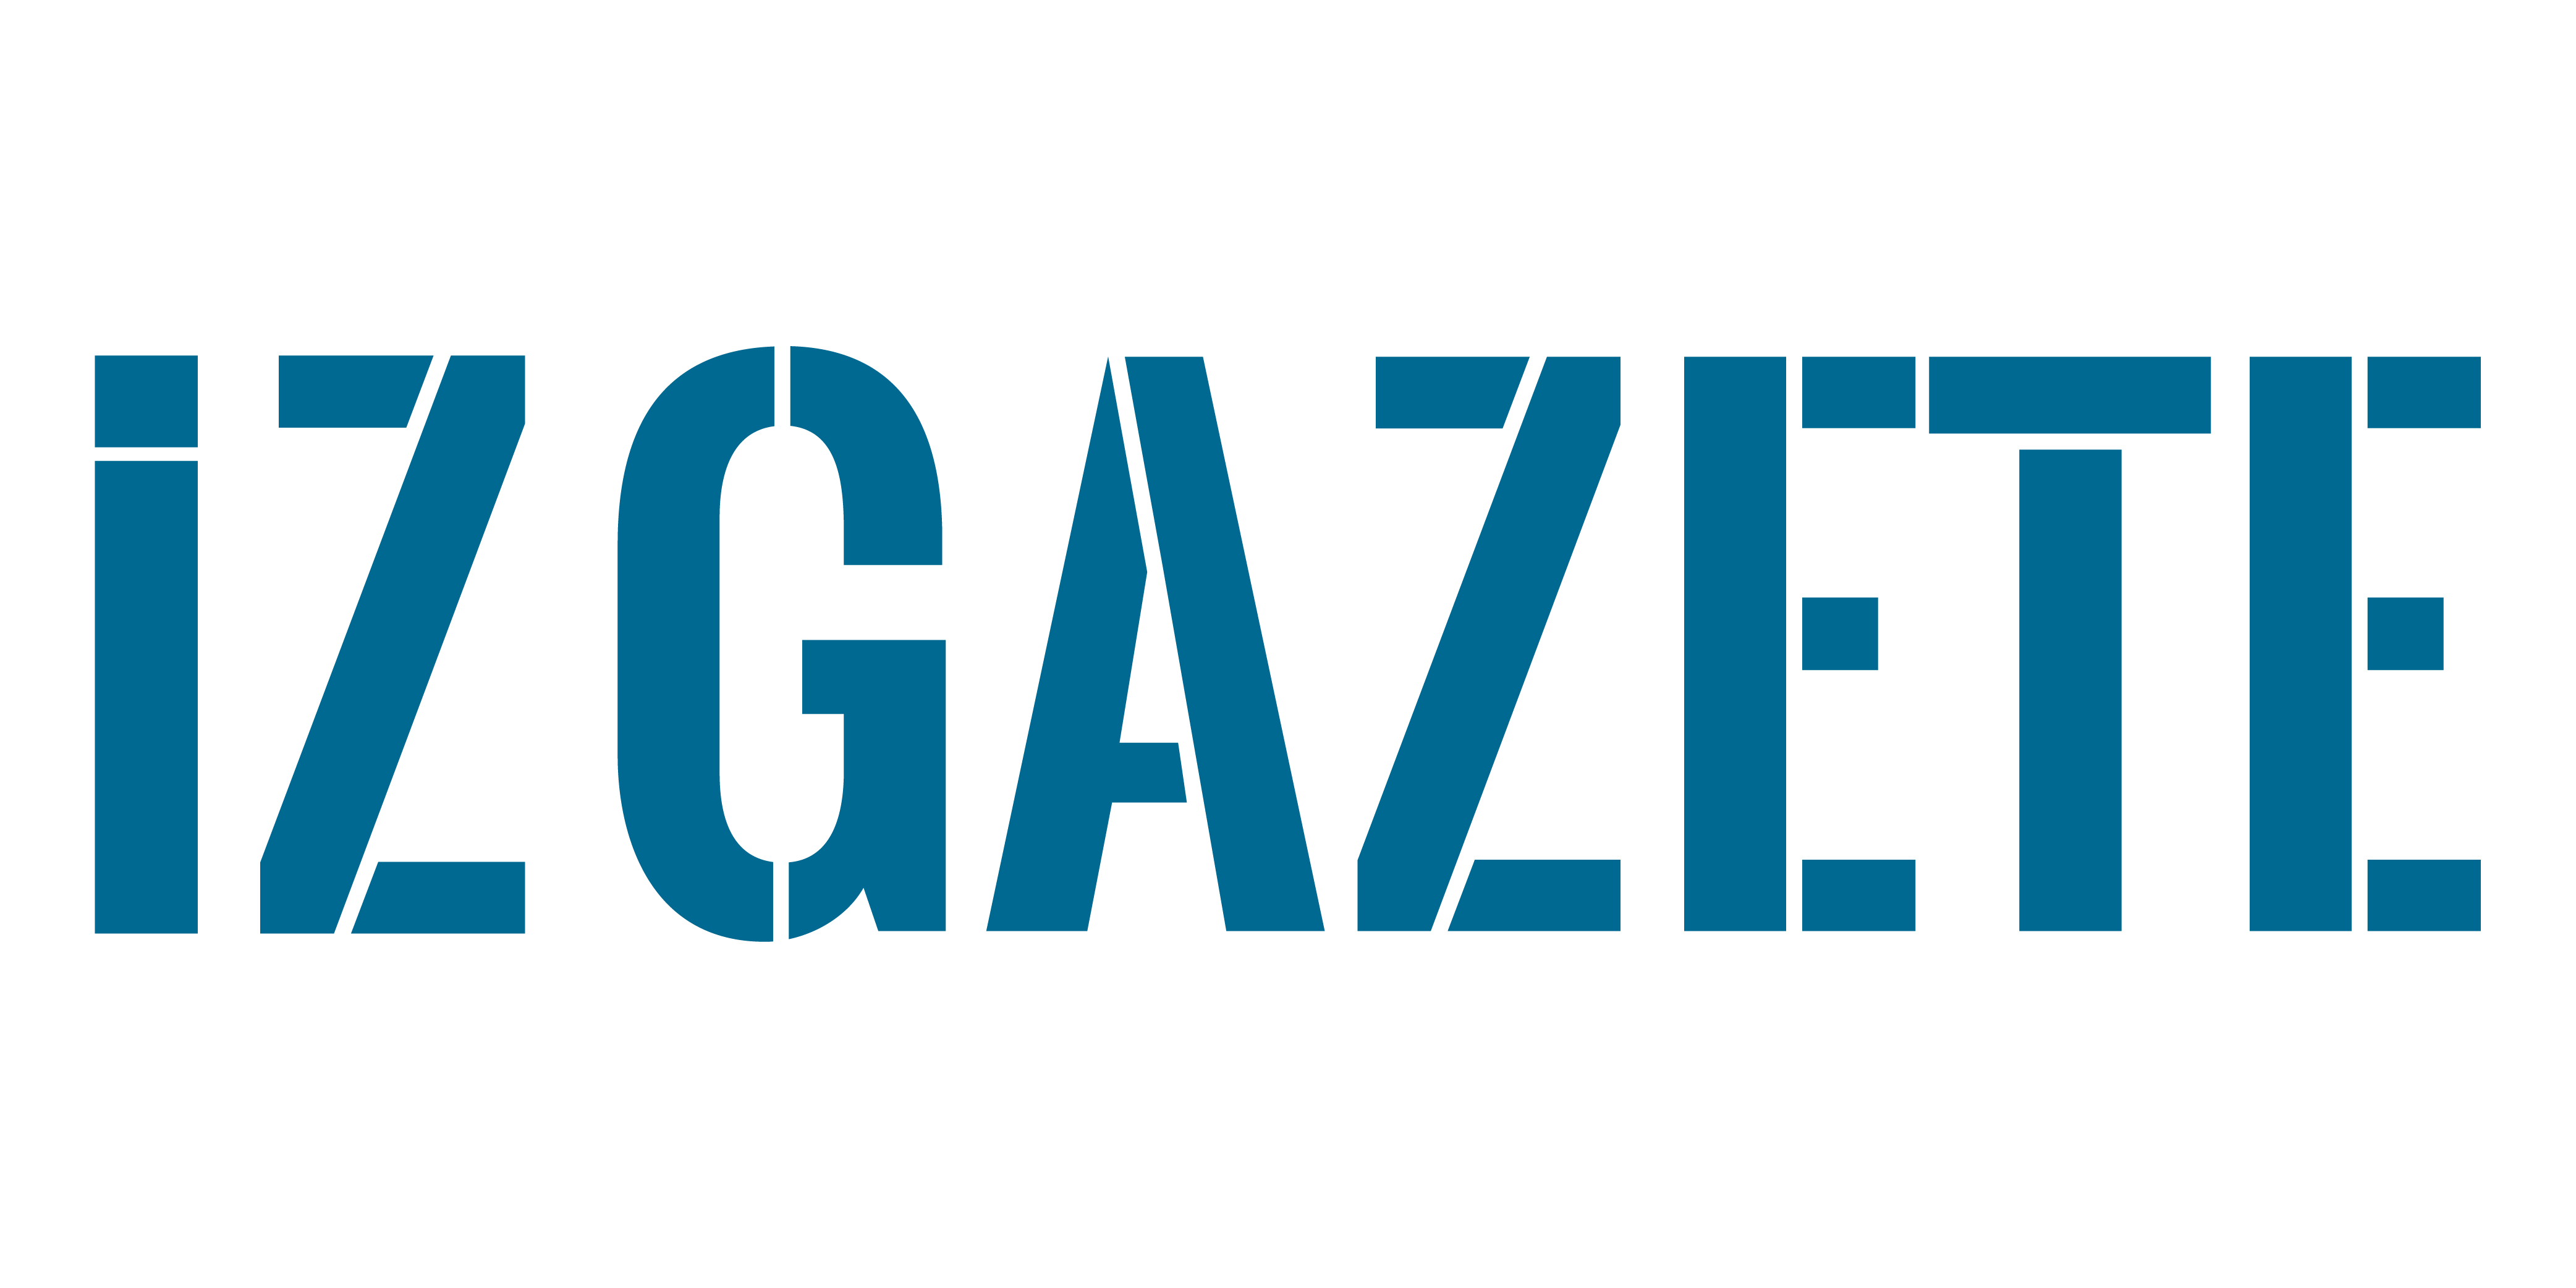 İz Gazete - İzmir'in Gazetesi